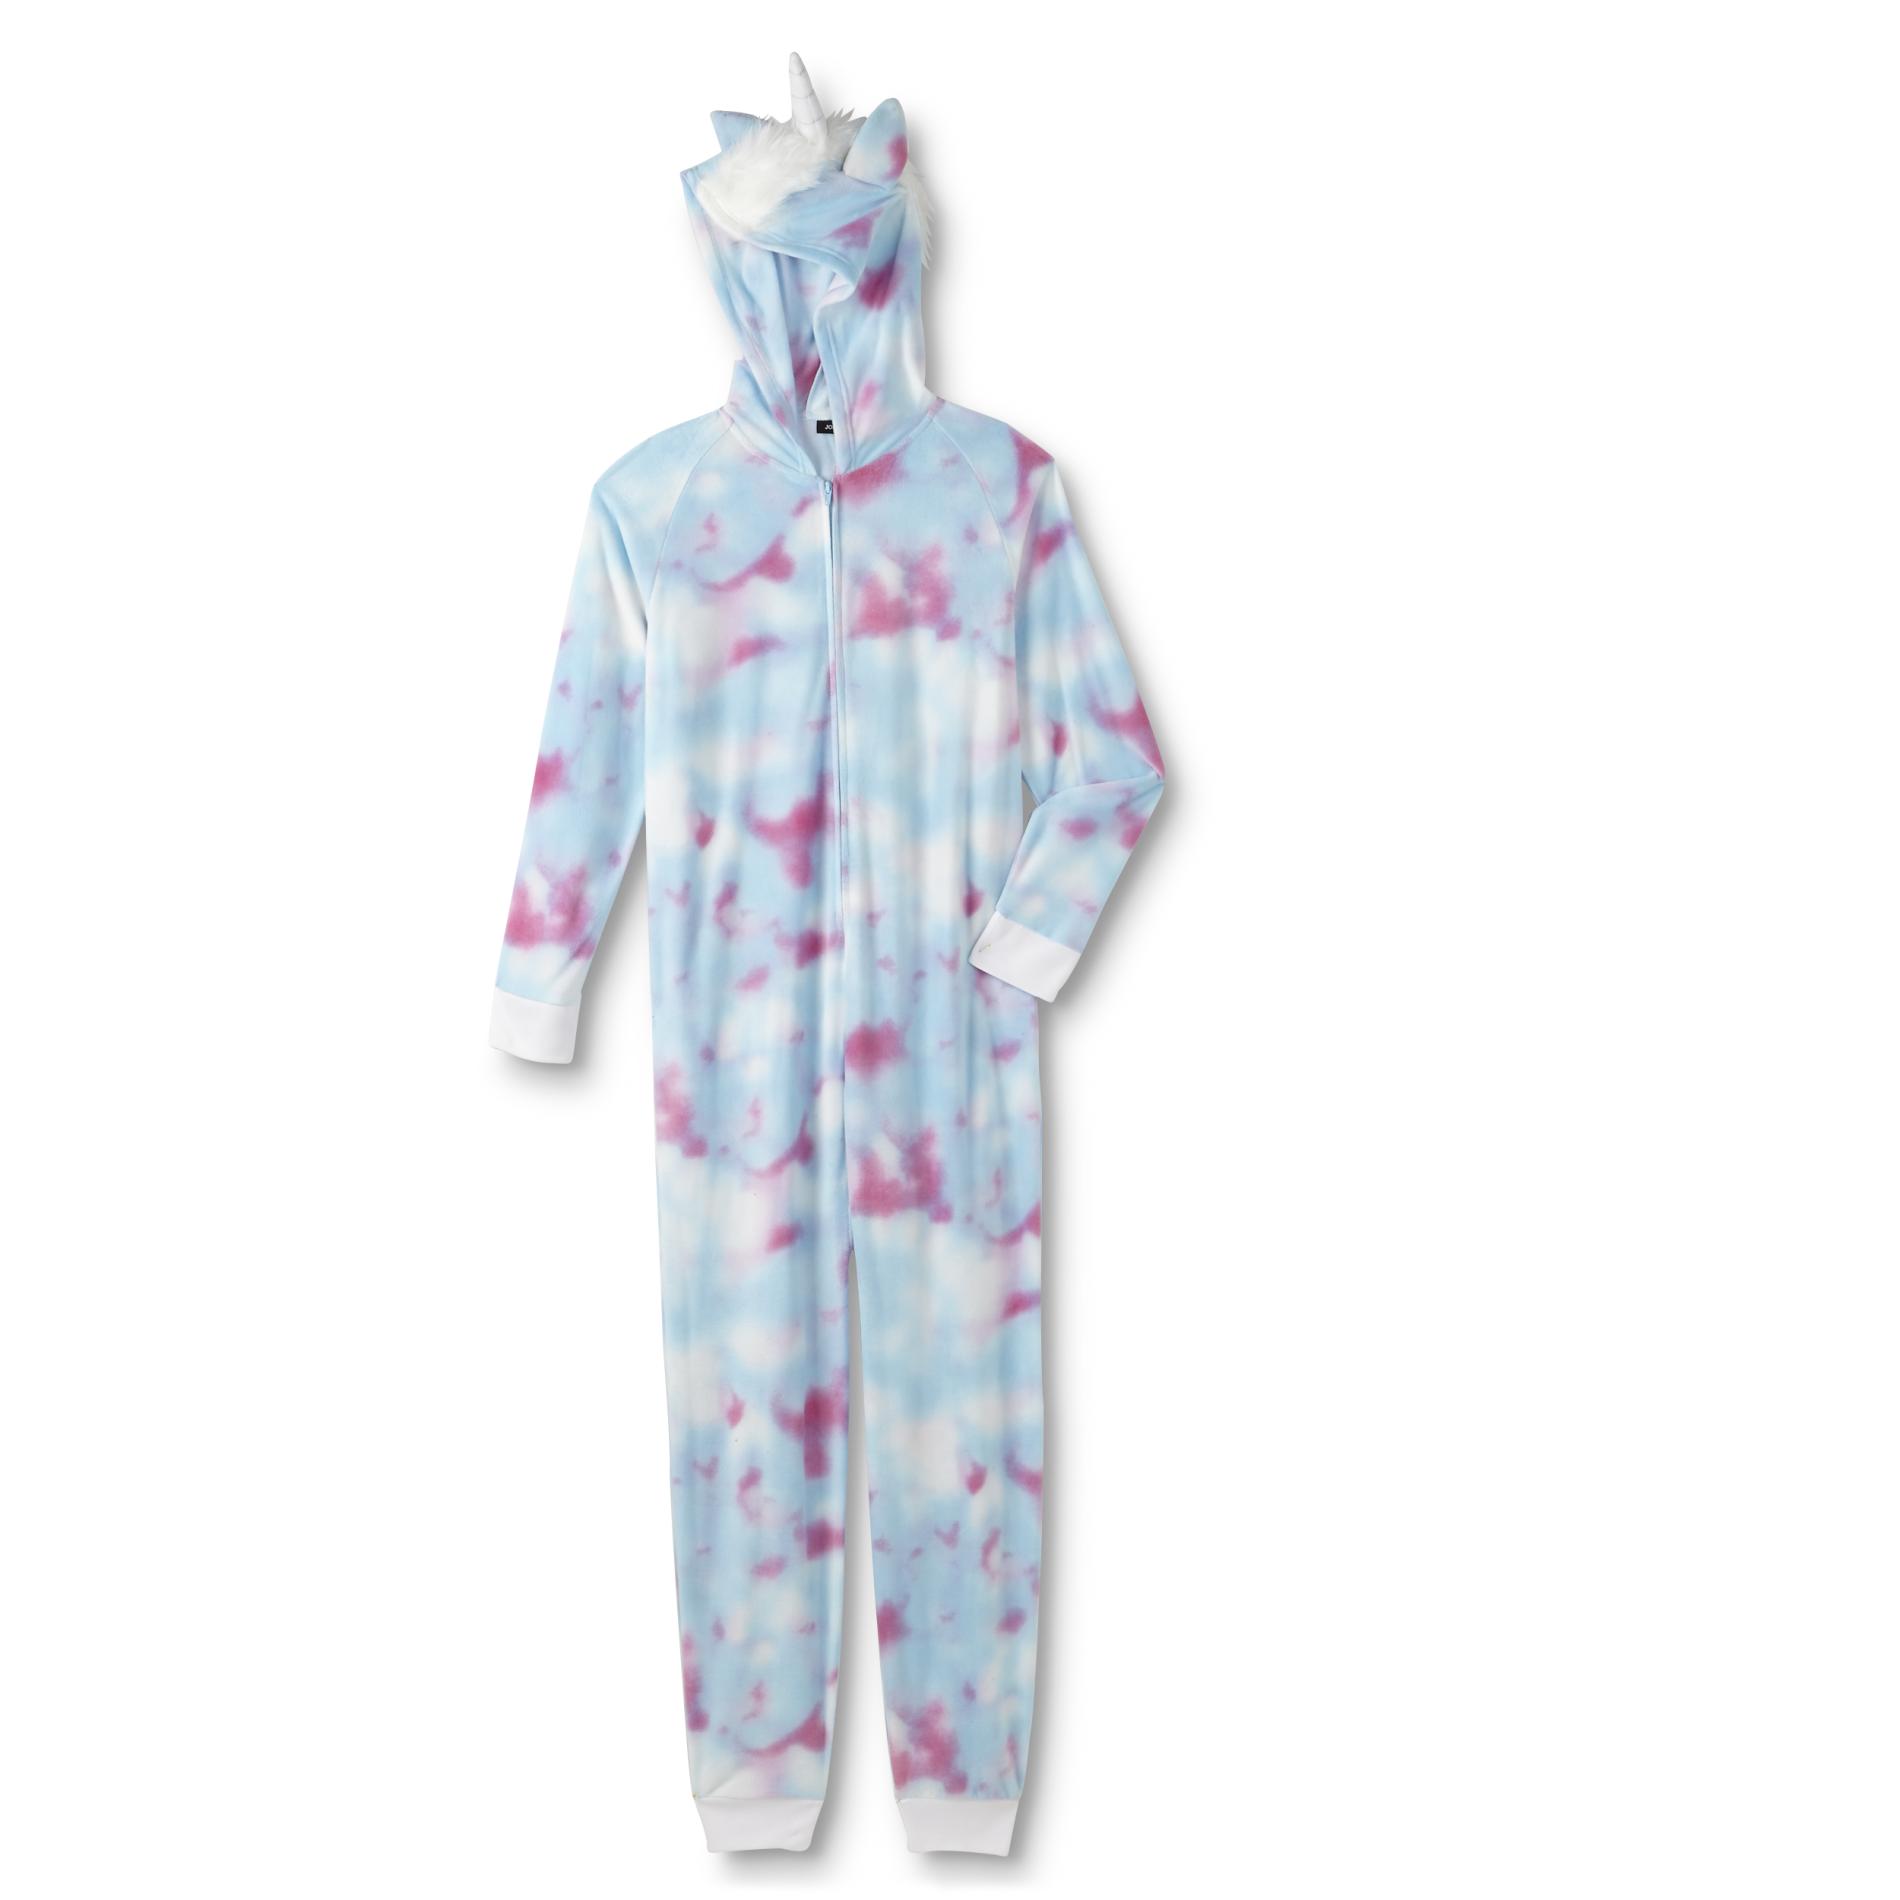 Joe Boxer Junior's Hooded One-Piece Pajamas - Unicorn